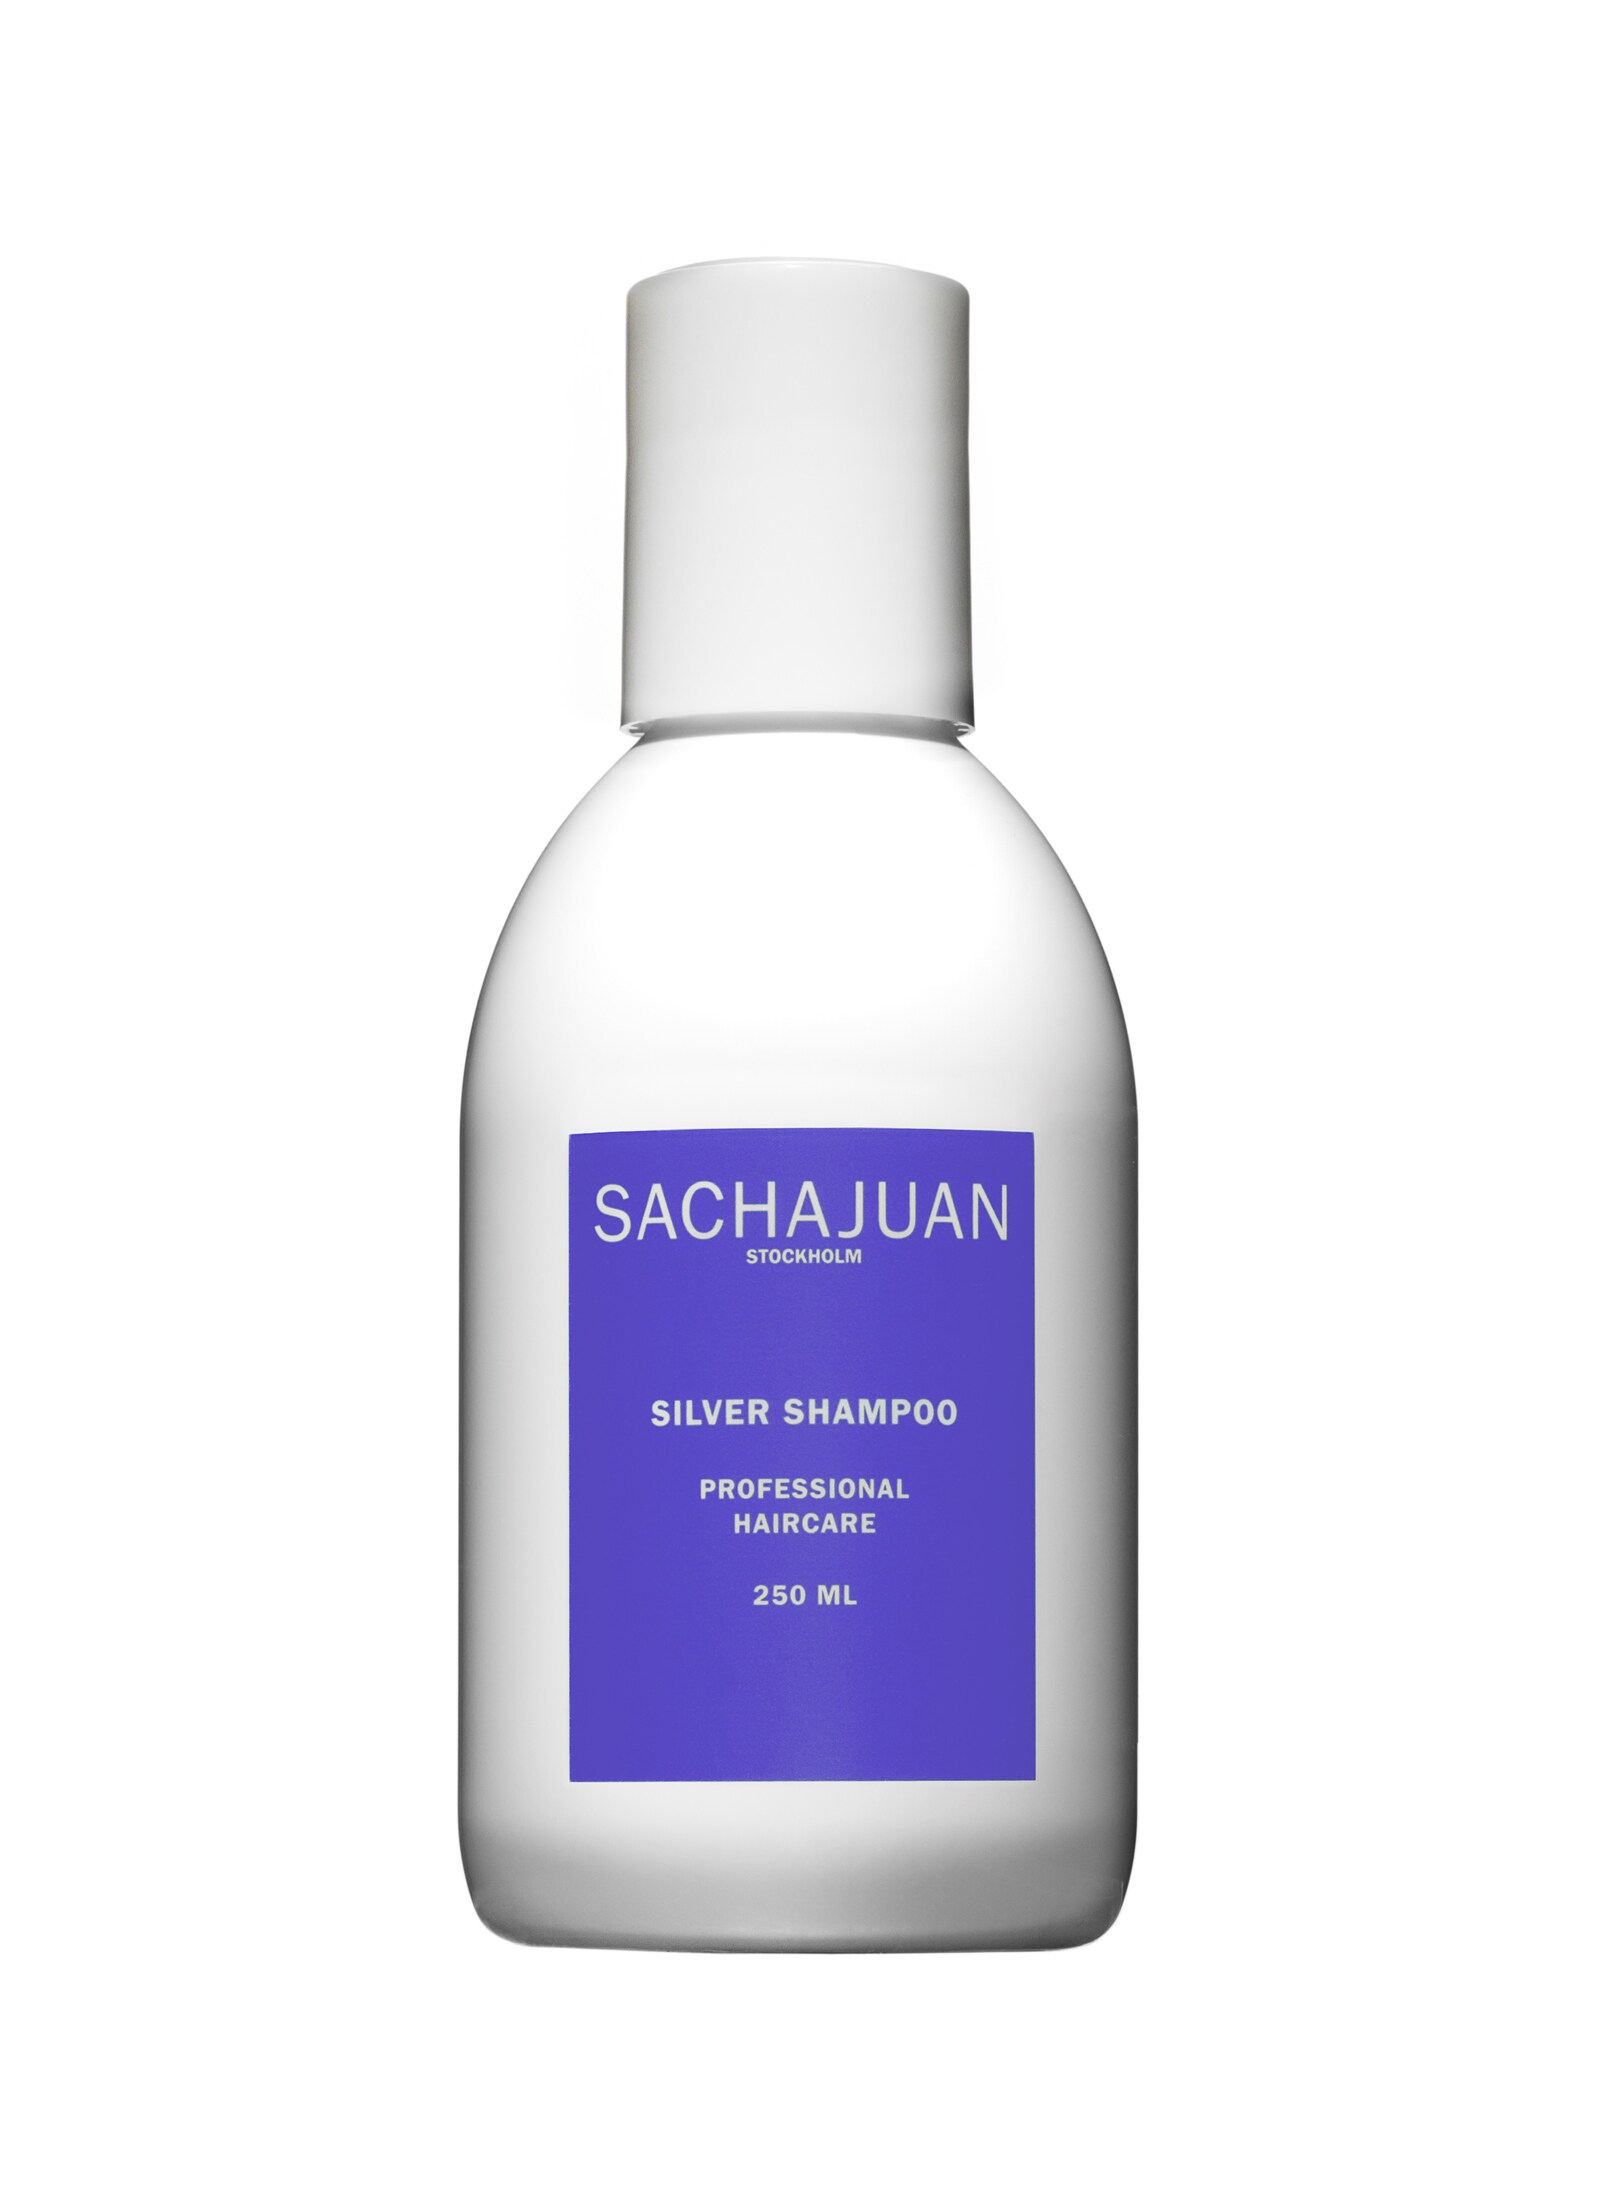 Silver Shampoo - Champú para Cabello Gris y Blanco de Sachajuan